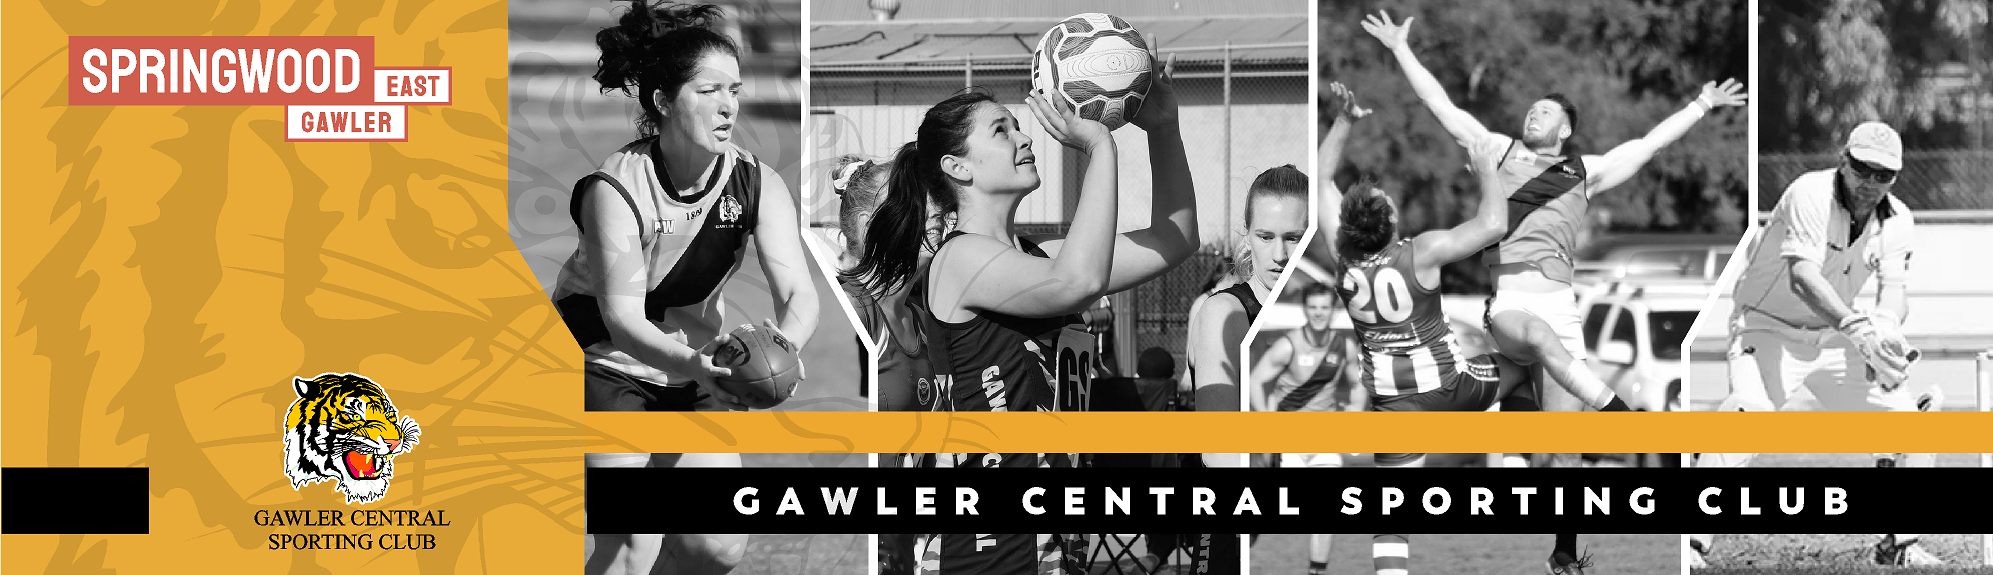 GCSC | Gawler Central Sporting Club